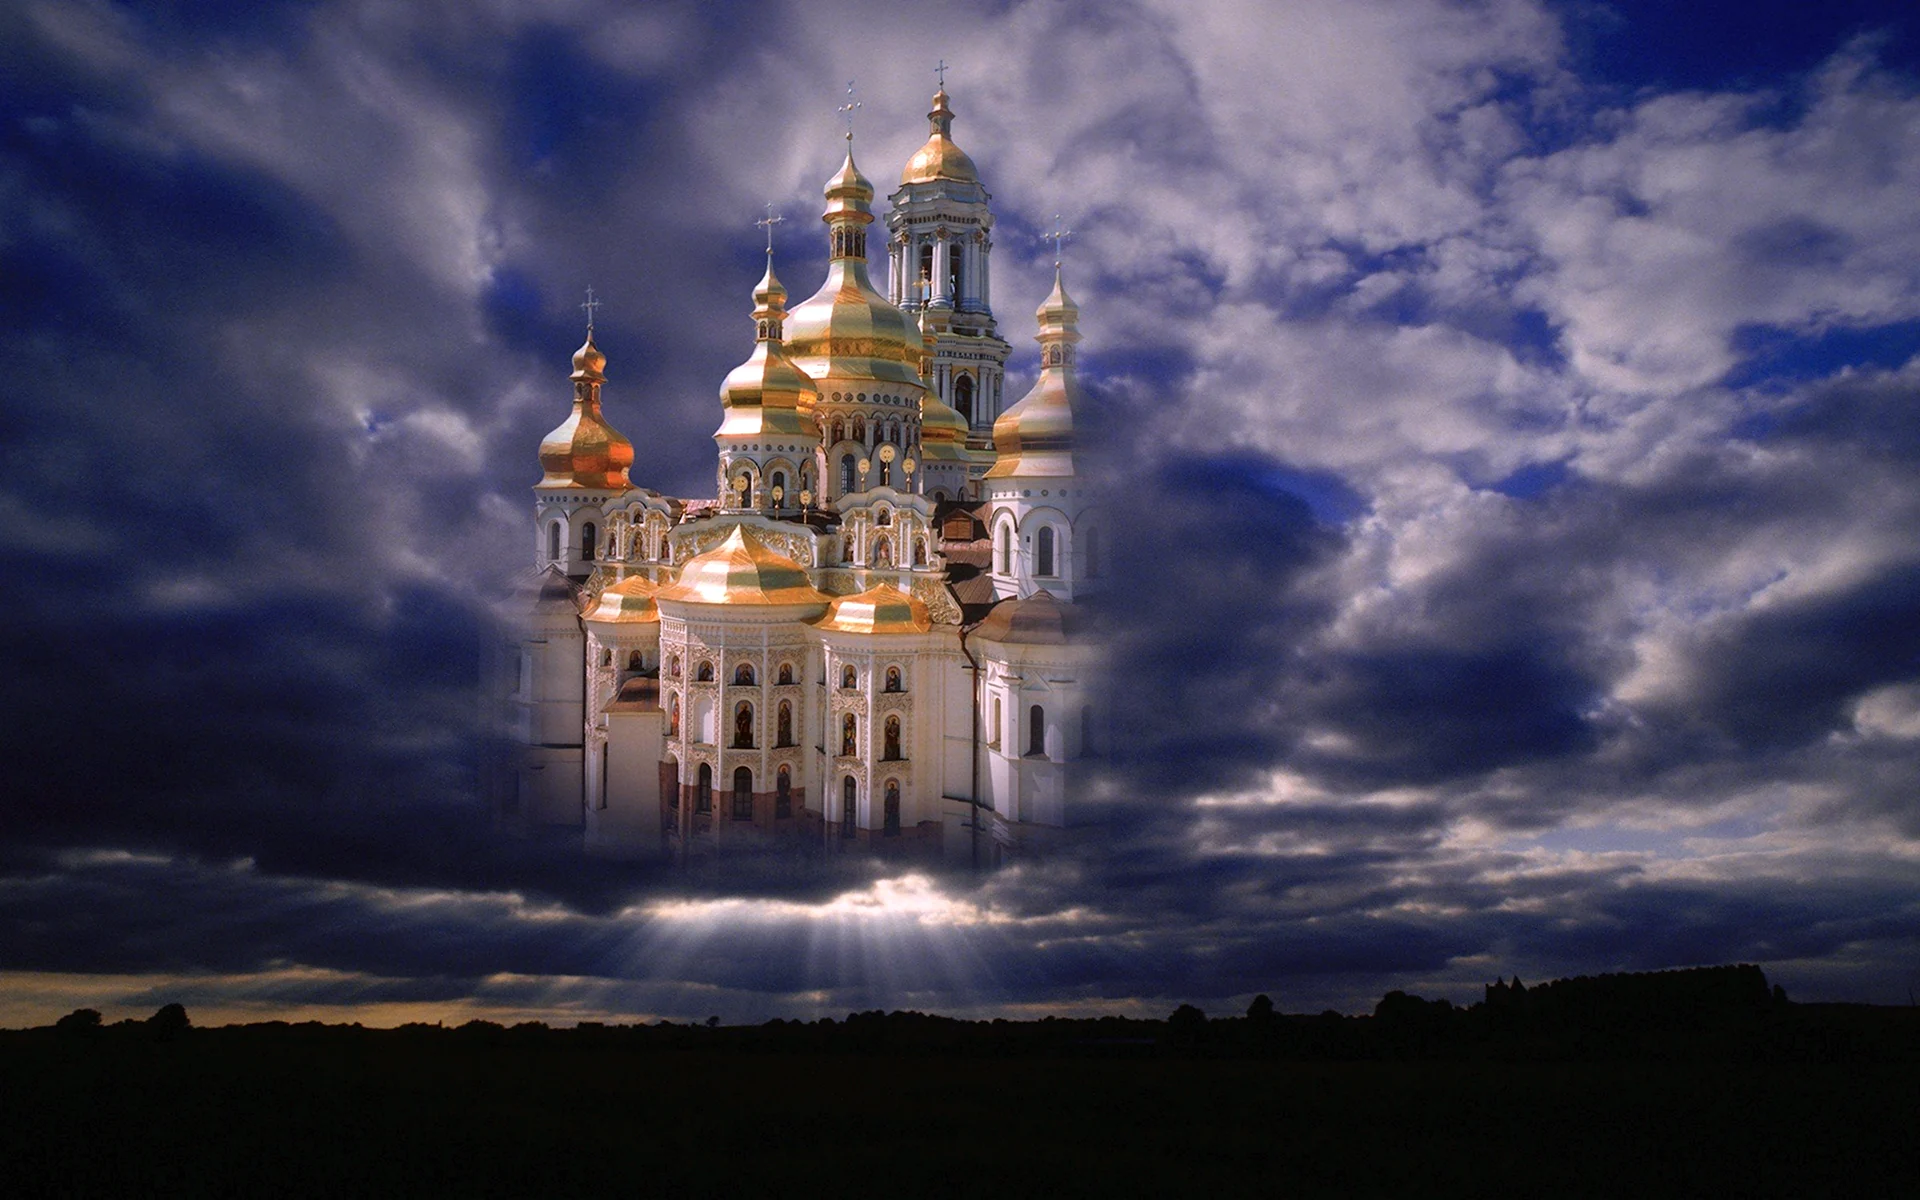 Храмы России